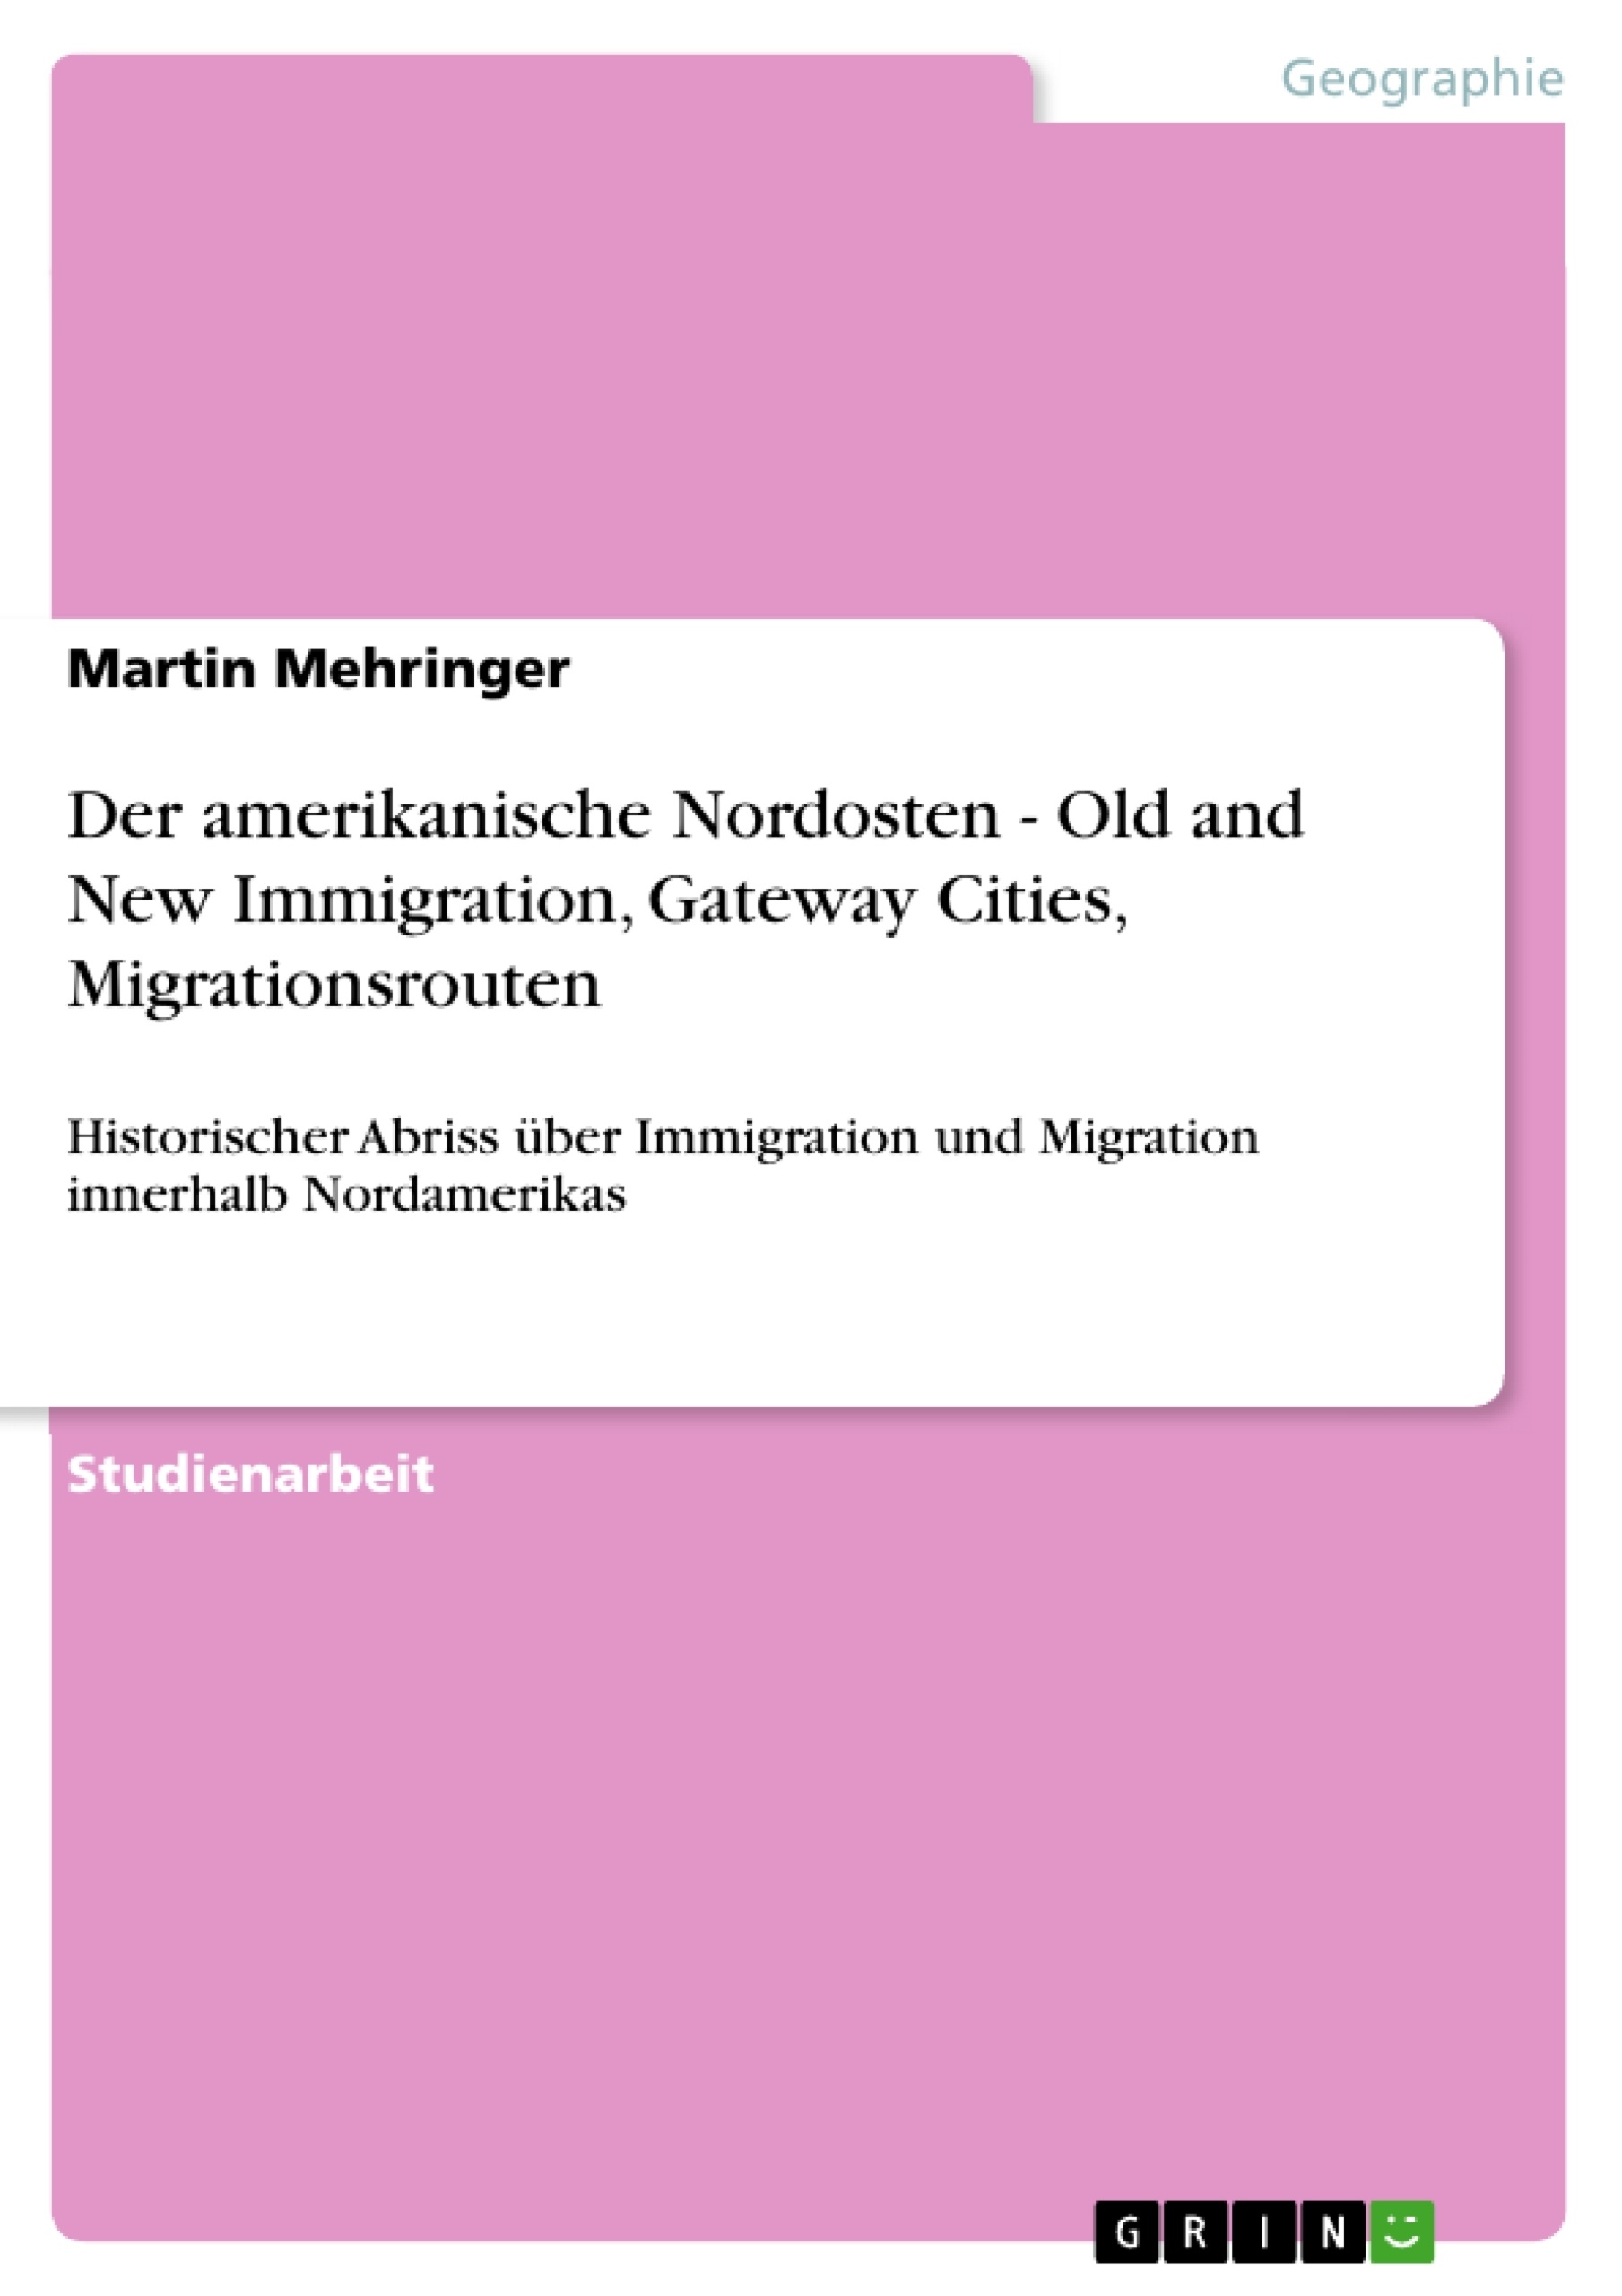 Titel: Der amerikanische Nordosten - Old and New Immigration, Gateway Cities, Migrationsrouten